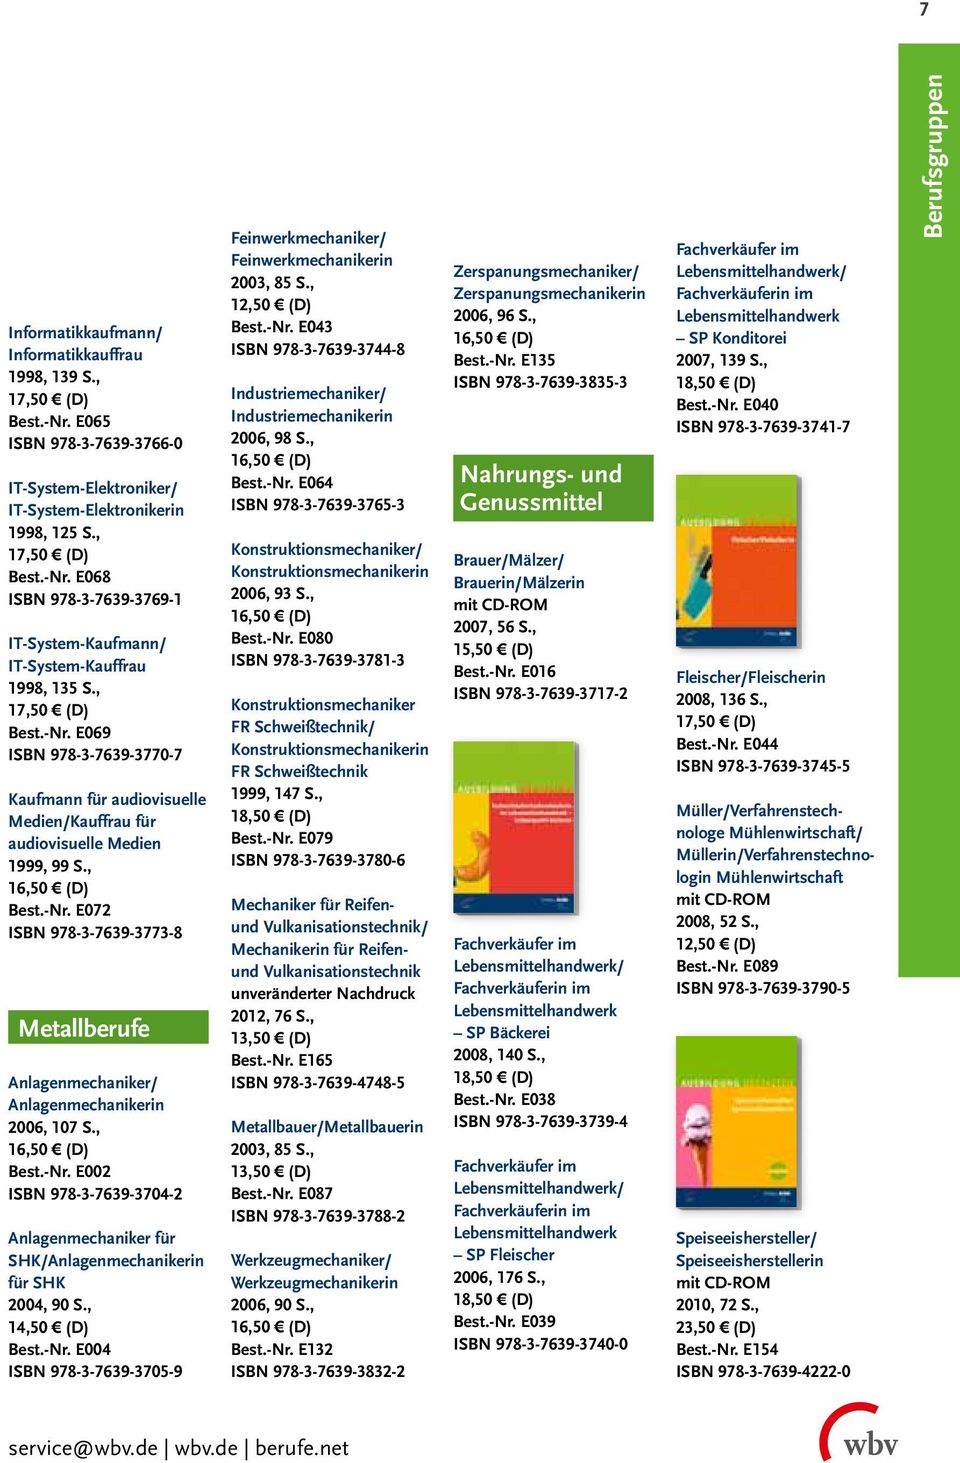 , Best.-Nr. E002 ISBN 978-3-7639-3704-2 Anlagenmechaniker für SHK/Anlagenmechanikerin für SHK 2004, 90 S., 14,50 (D) Best.-Nr. E004 ISBN 978-3-7639-3705-9 Feinwerkmechaniker/ Feinwerkmechanikerin 2003, 85 S.